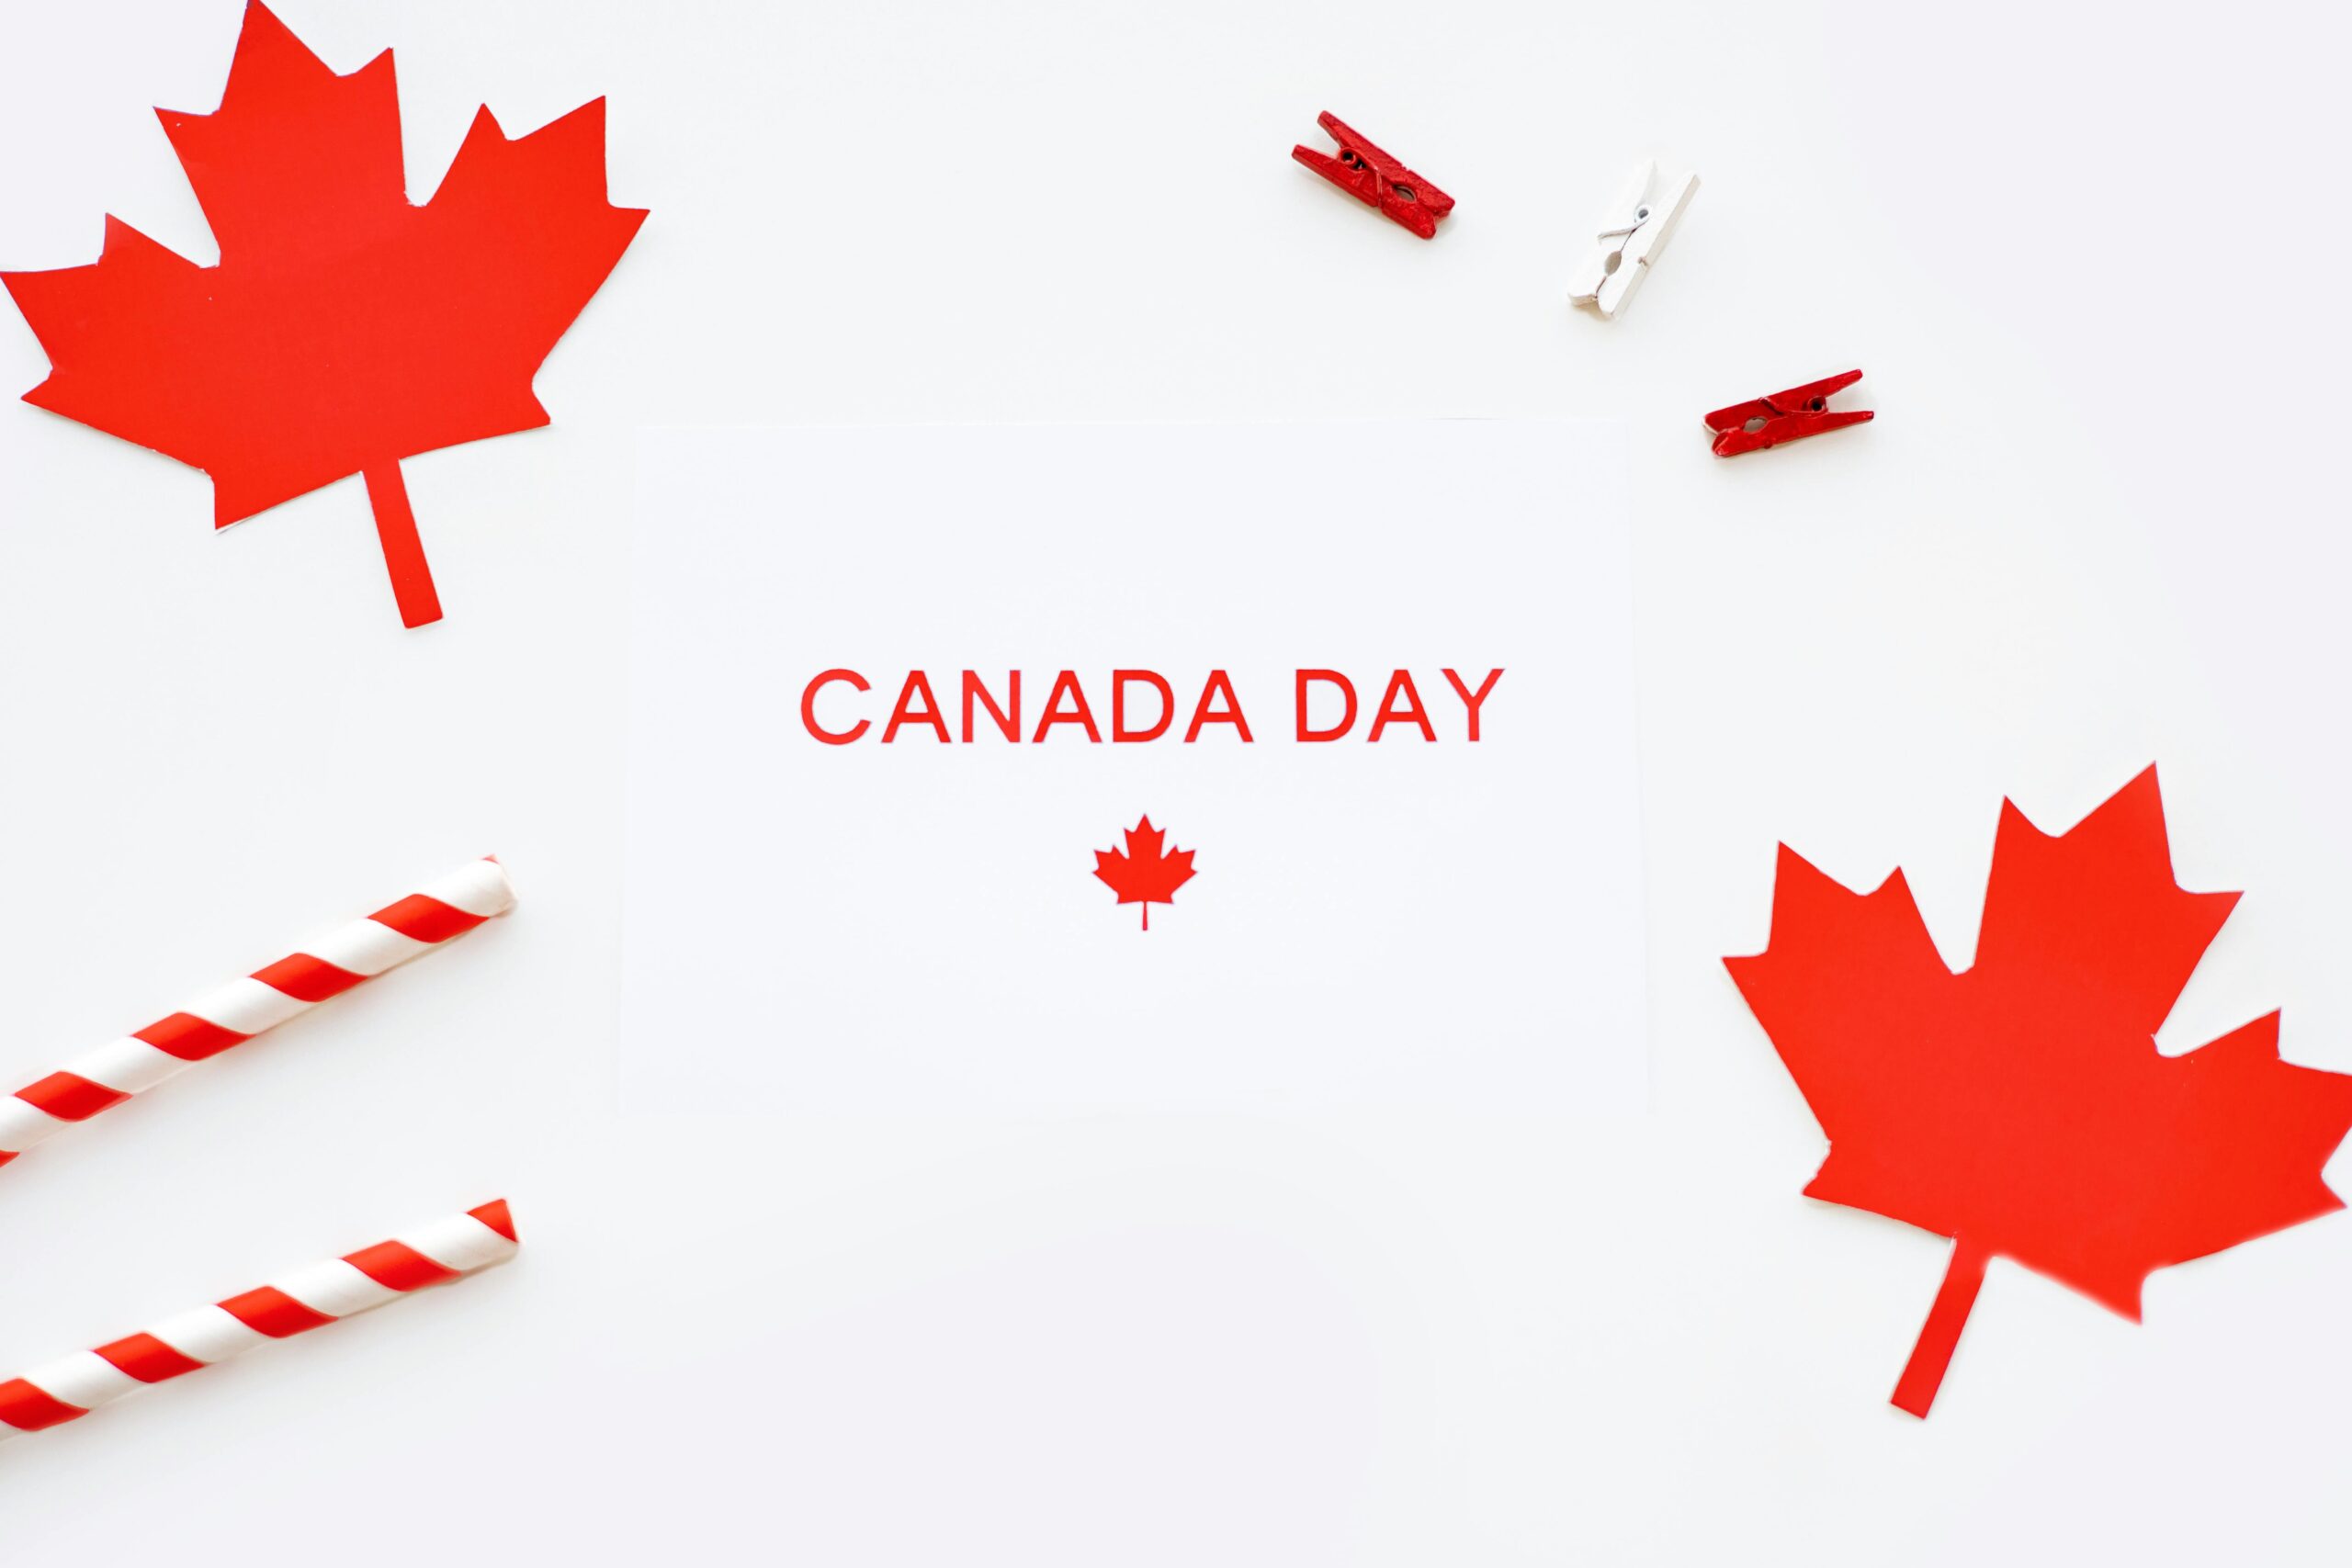 Calgary la llegada del Día de Canadá y busca retroalimentación de la comunidad